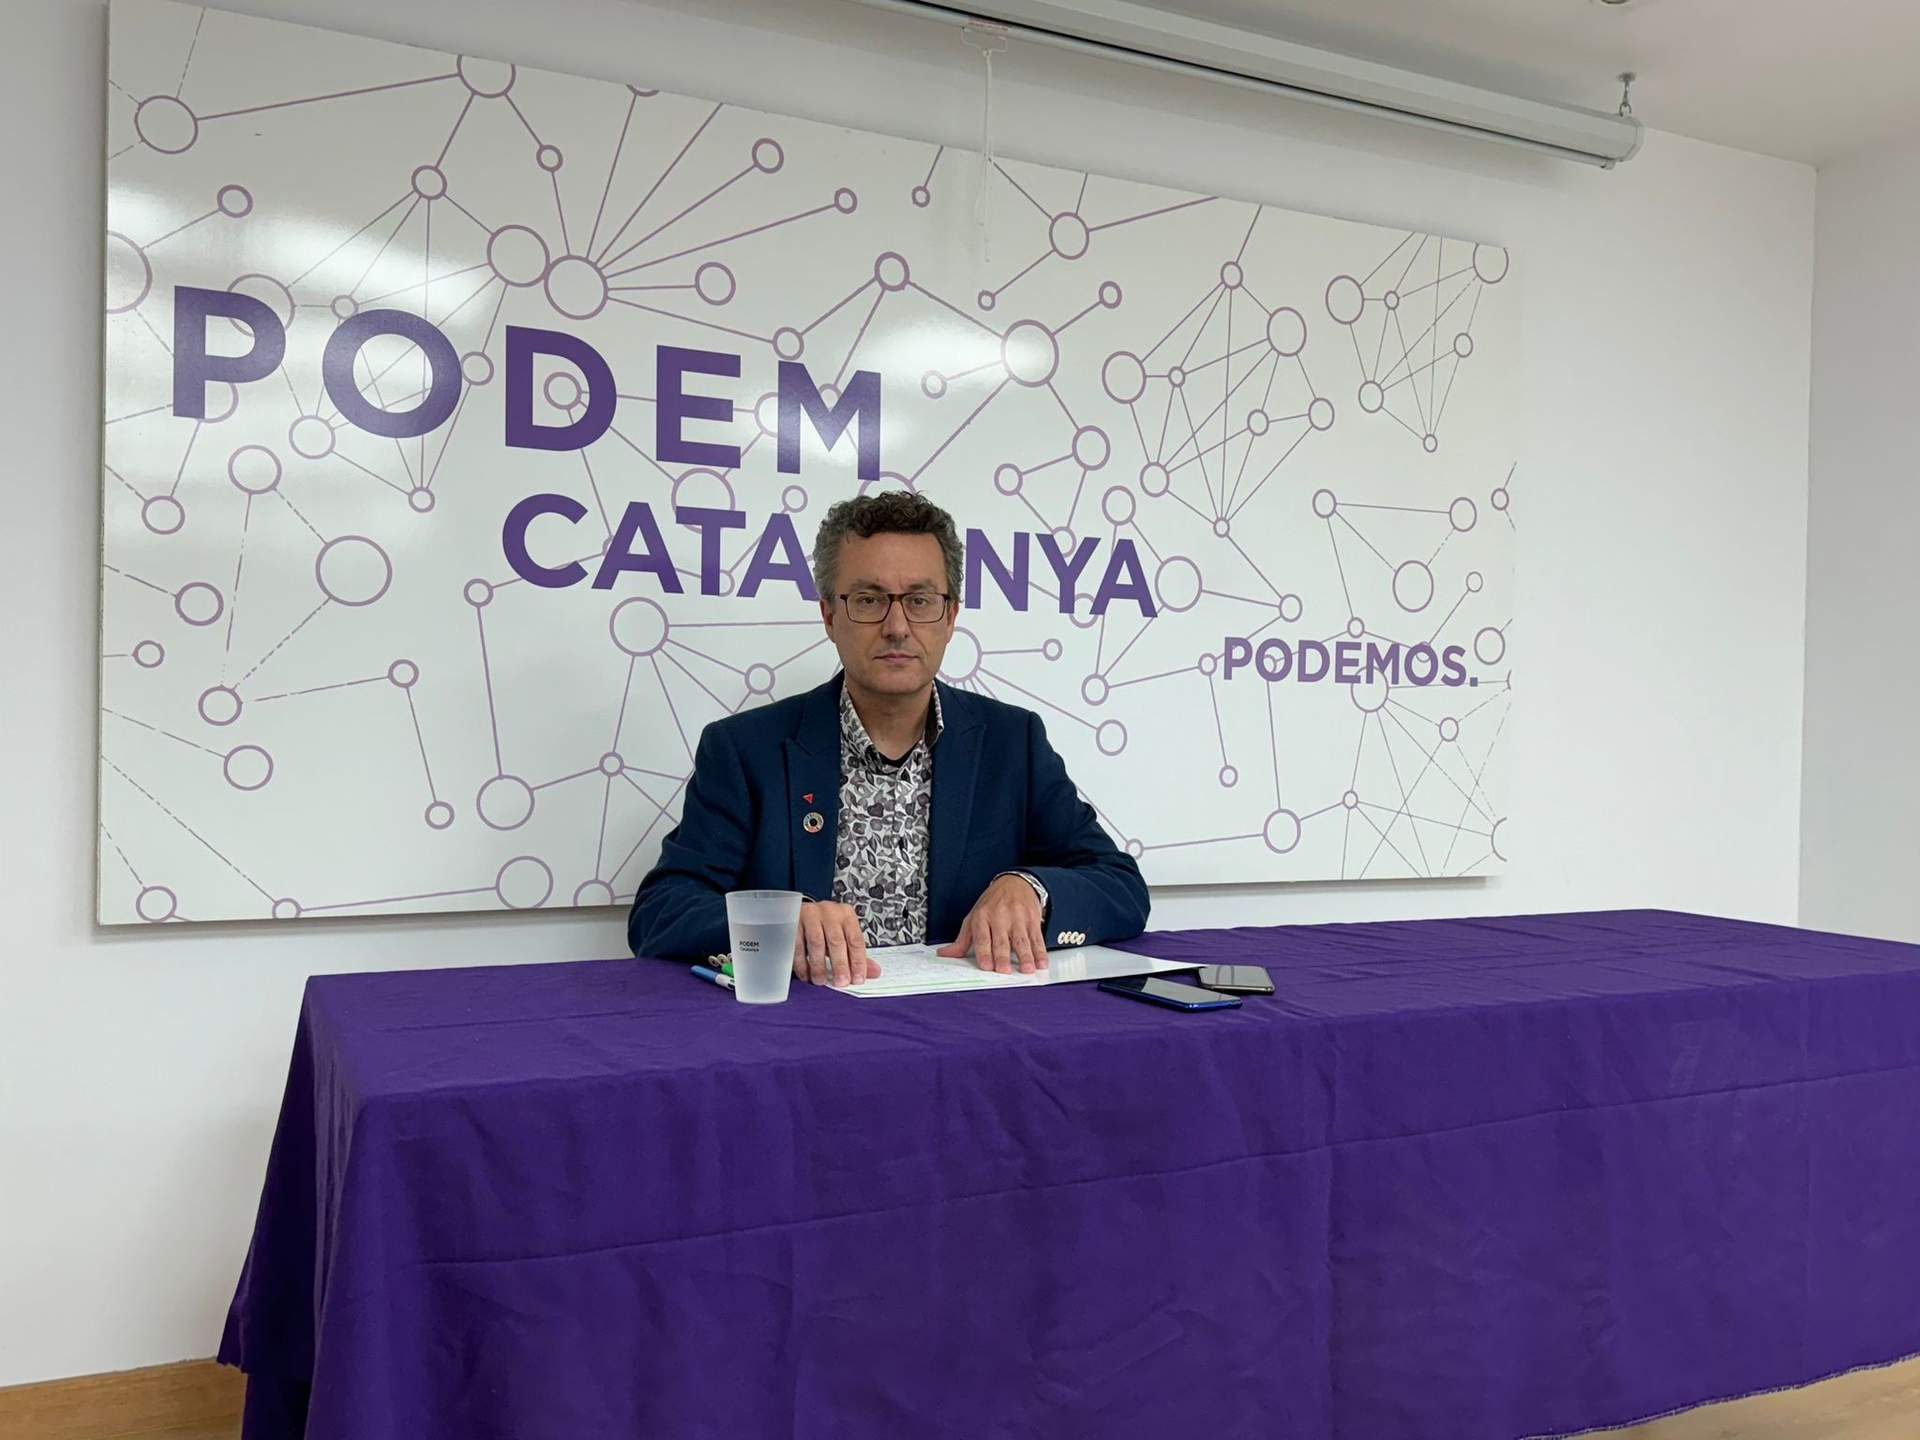 Podemos Cataluña empieza sus primarias para elegir candidato a las elecciones y afirma que están preparados